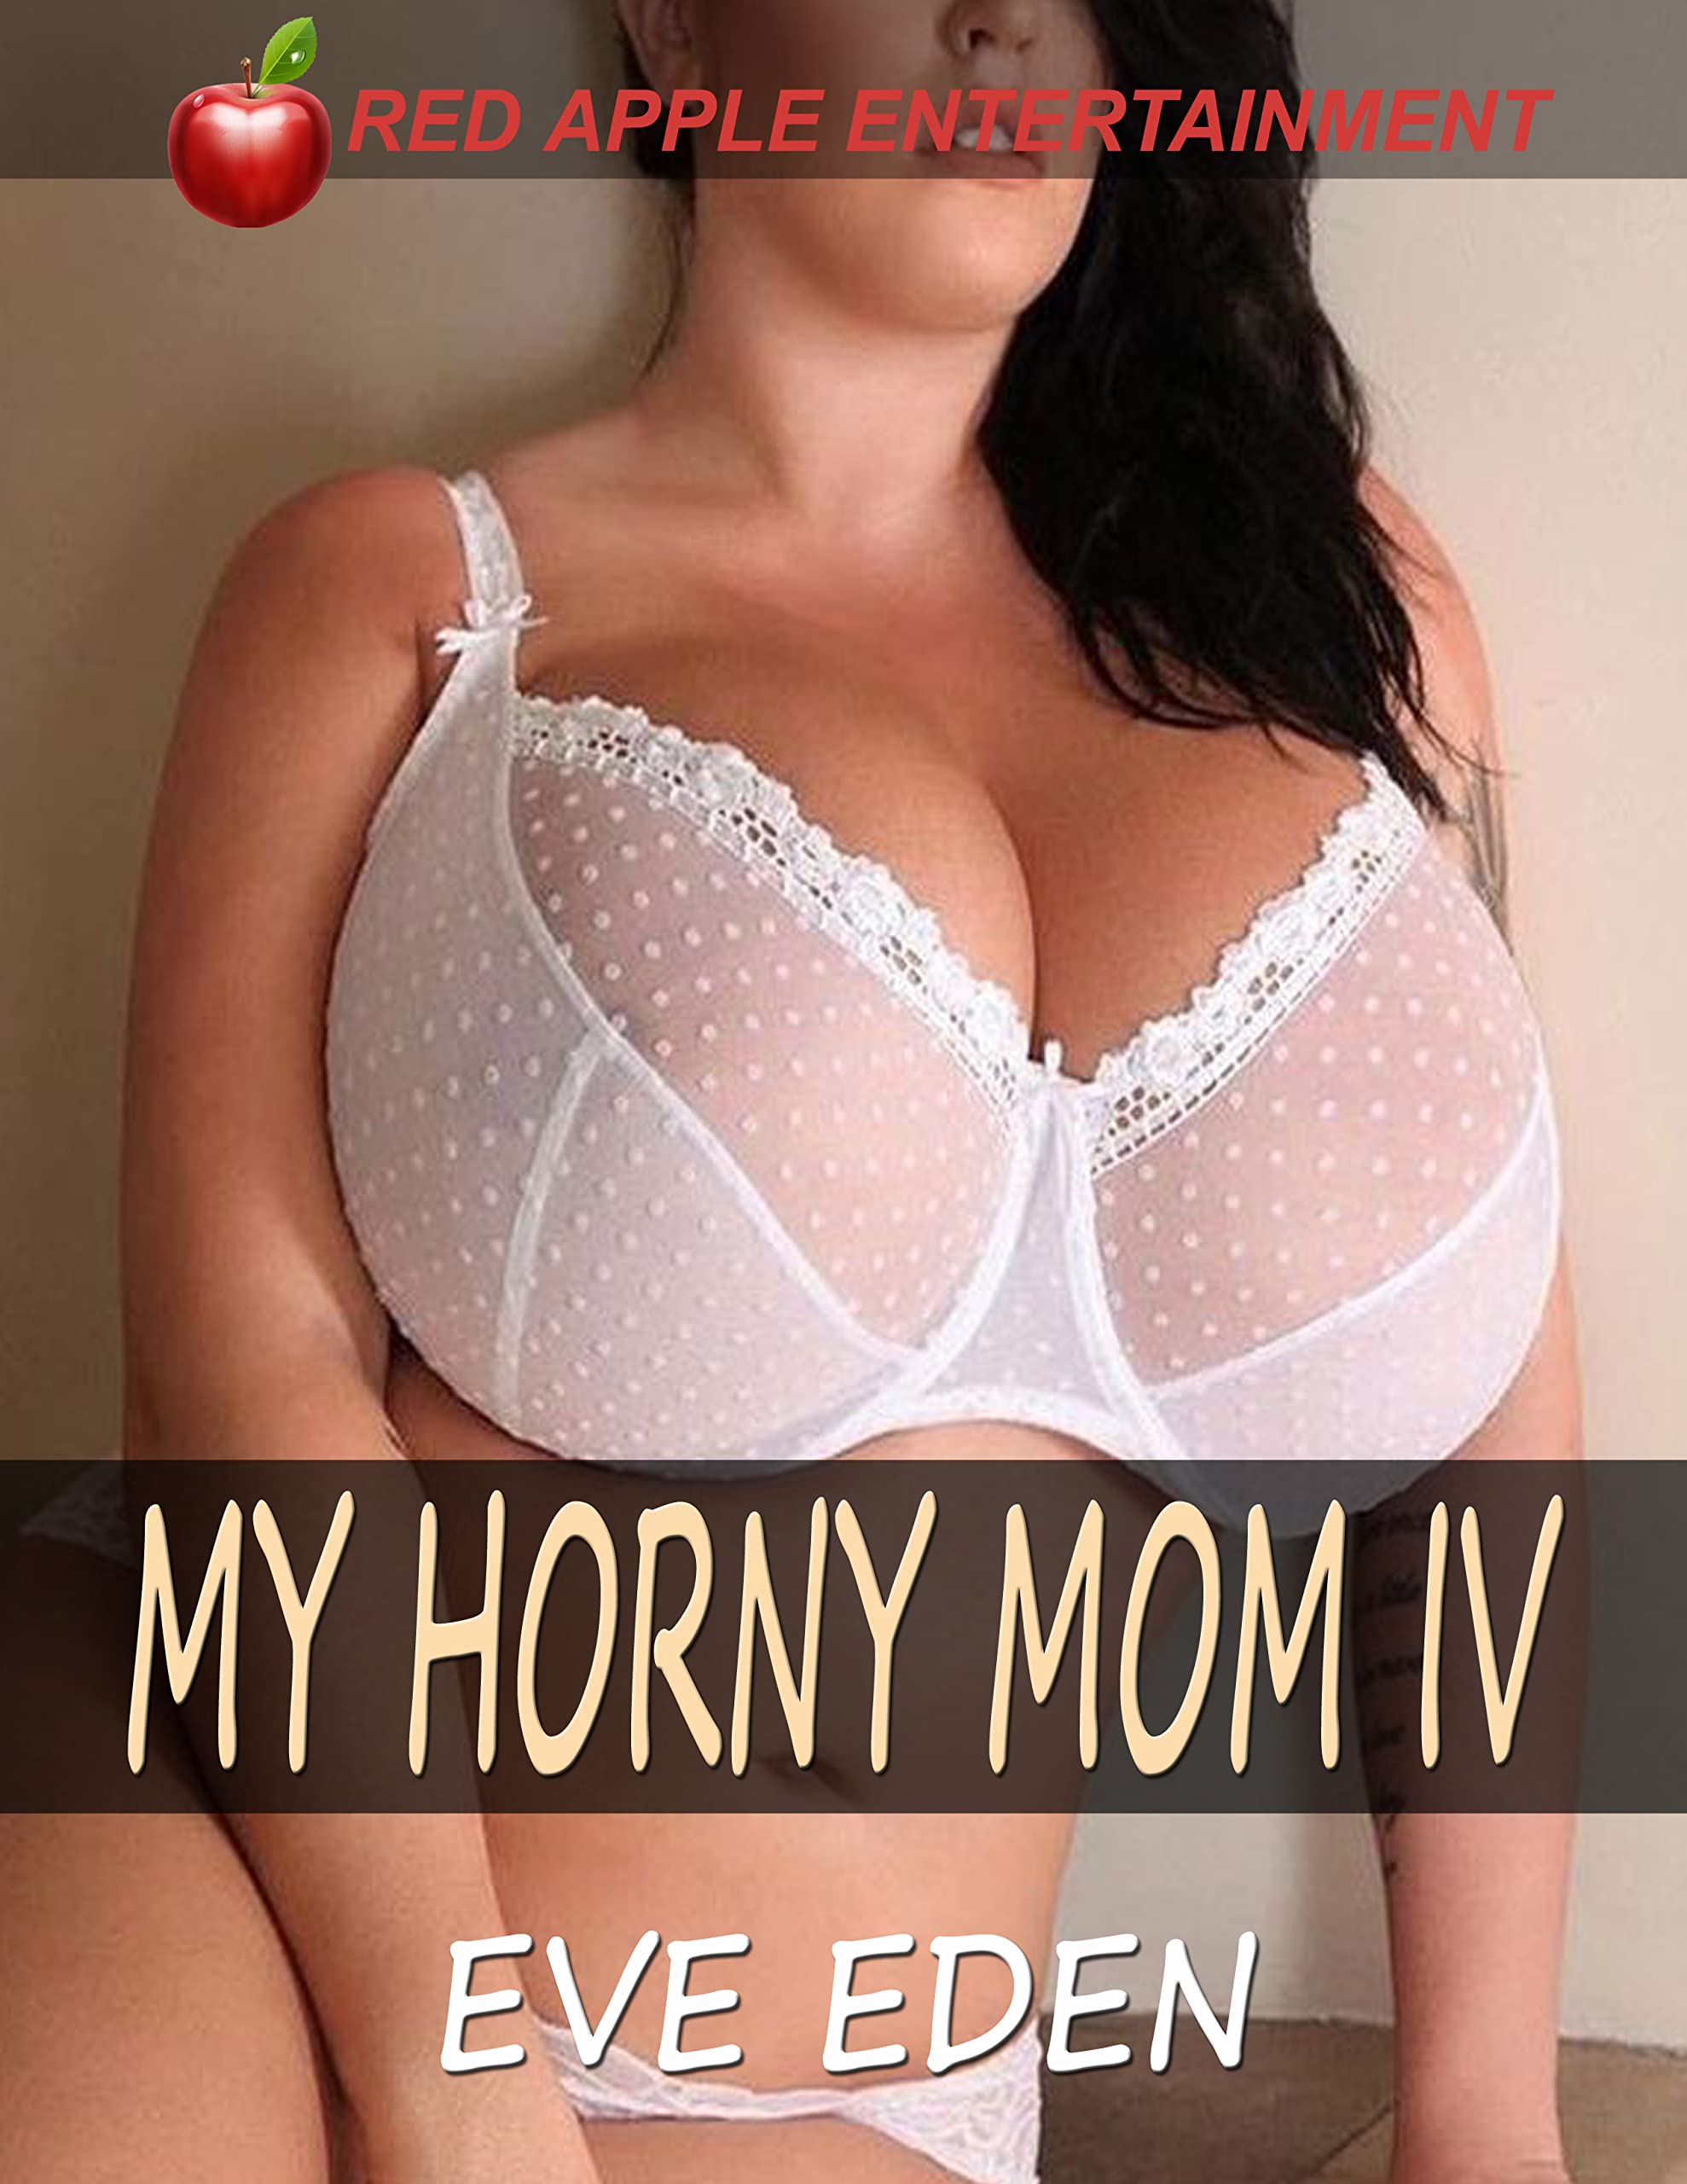 amy swackhamer share my hot horny mom photos